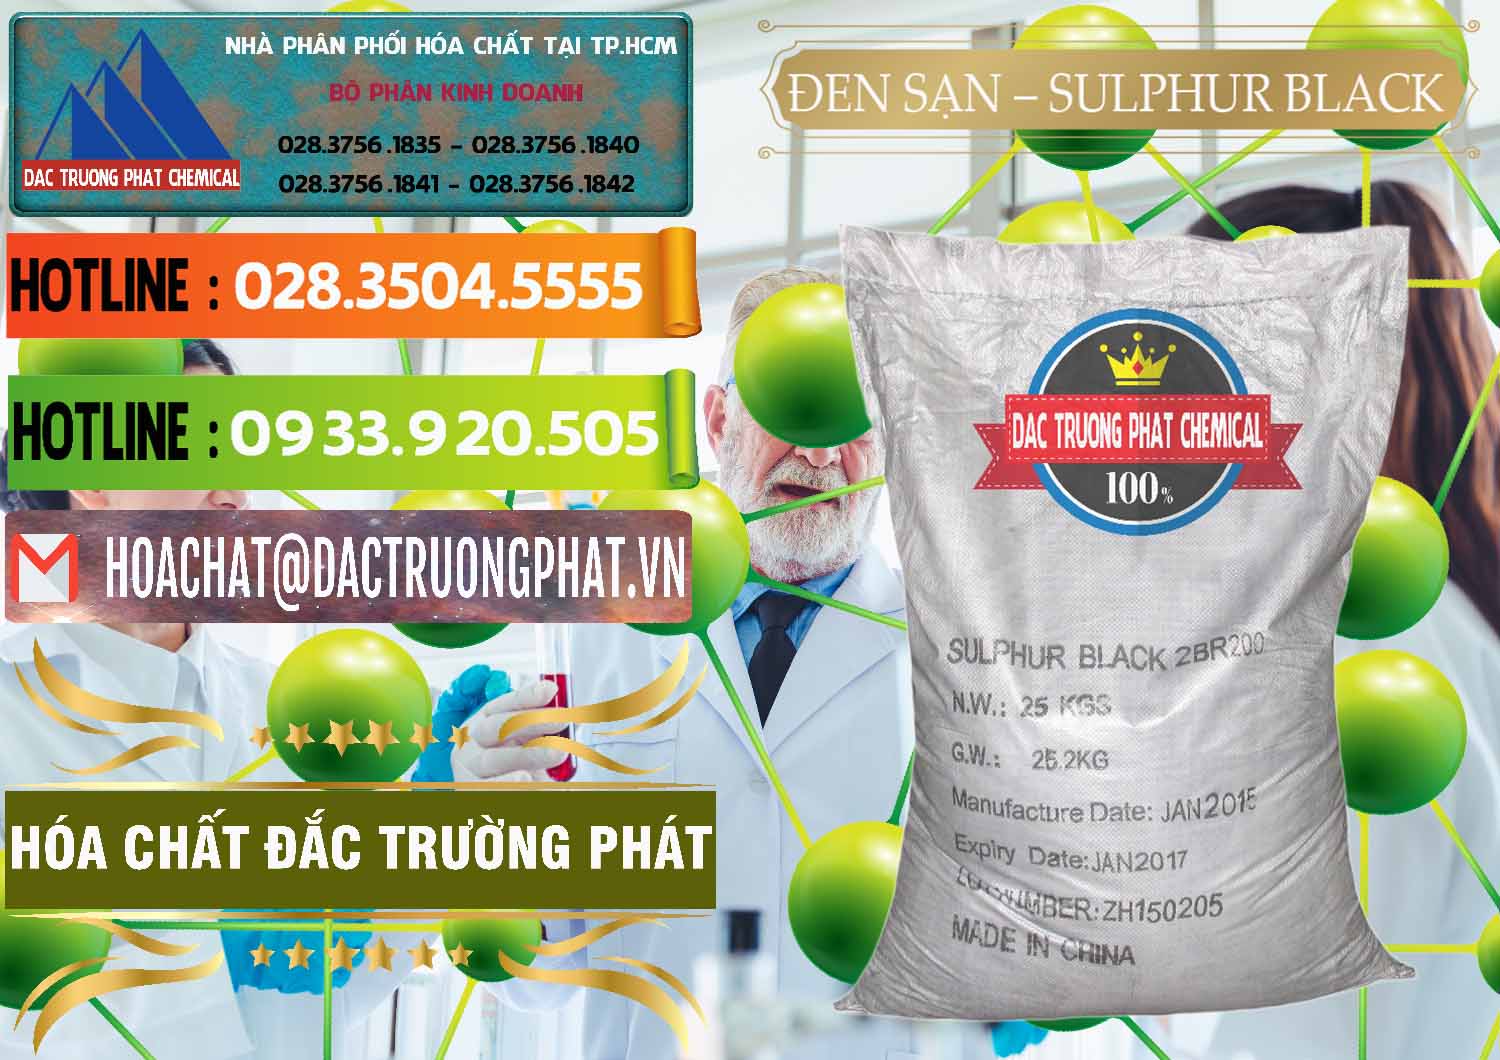 Đơn vị chuyên bán và phân phối Đen Sạn – Sulphur Black Trung Quốc China - 0062 - Công ty phân phối ( cung ứng ) hóa chất tại TP.HCM - cungcaphoachat.com.vn